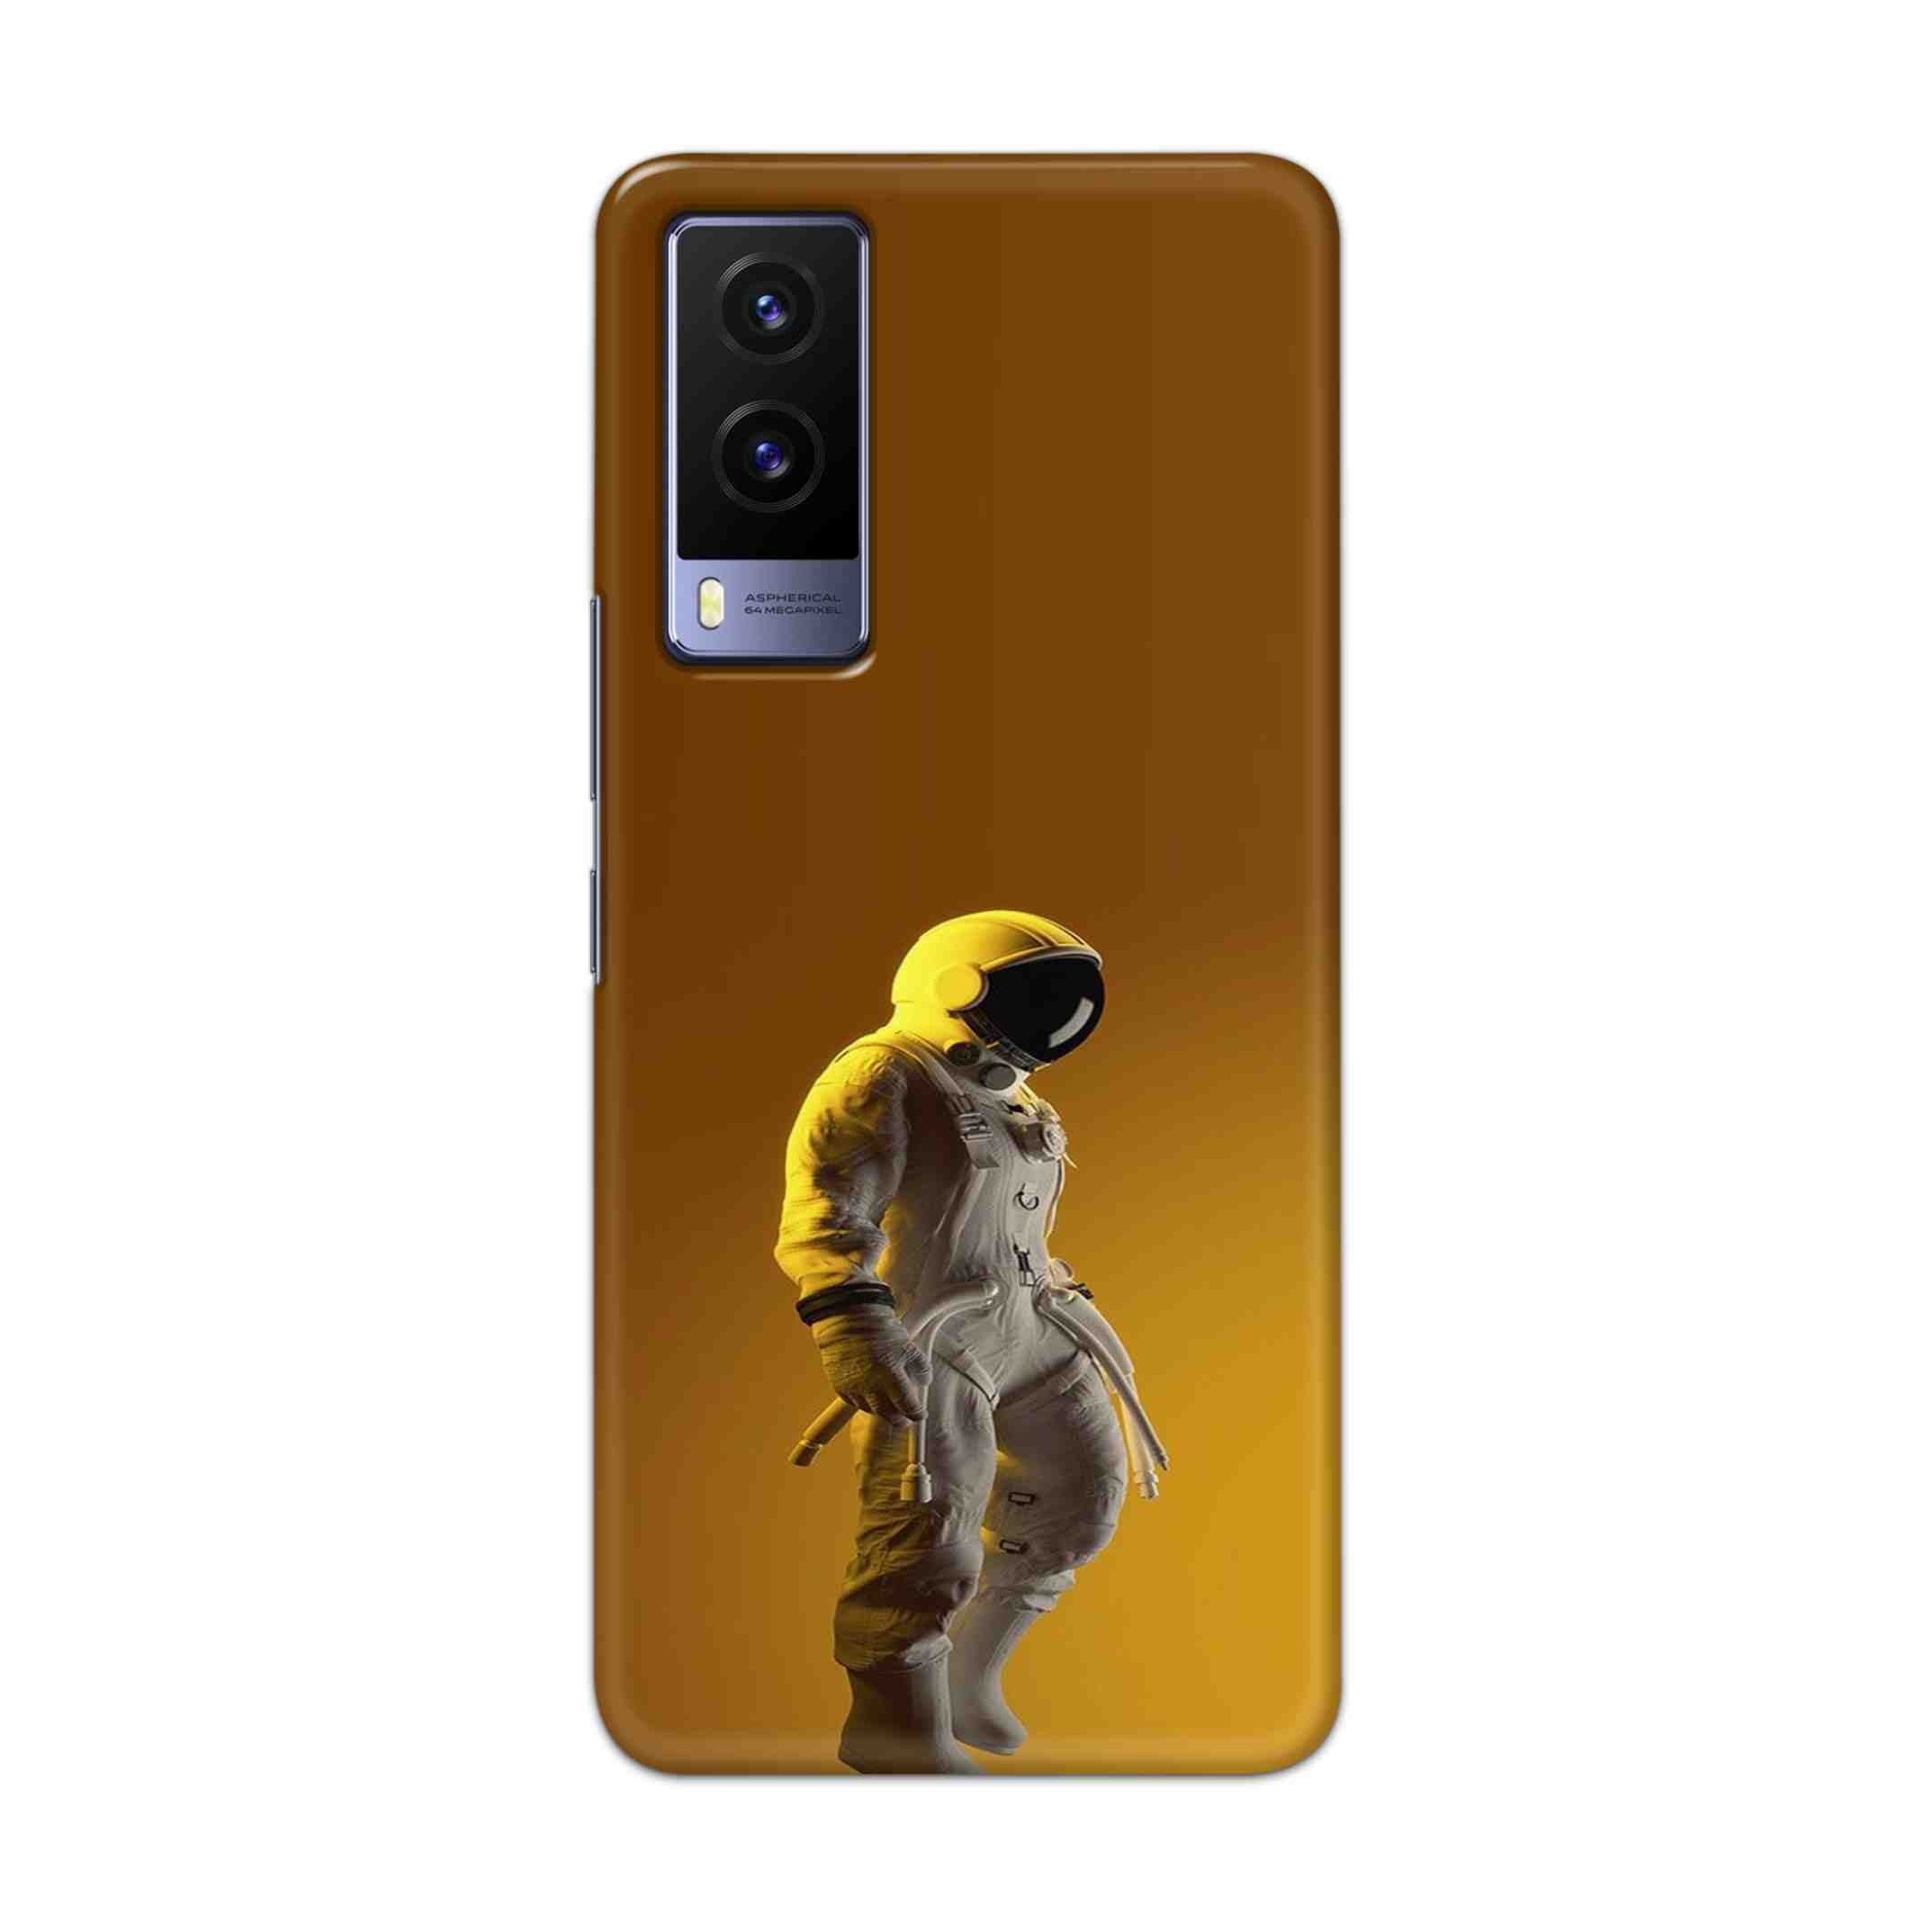 Buy Yellow Astronaut Hard Back Mobile Phone Case Cover For Vivo V21e 5G Online